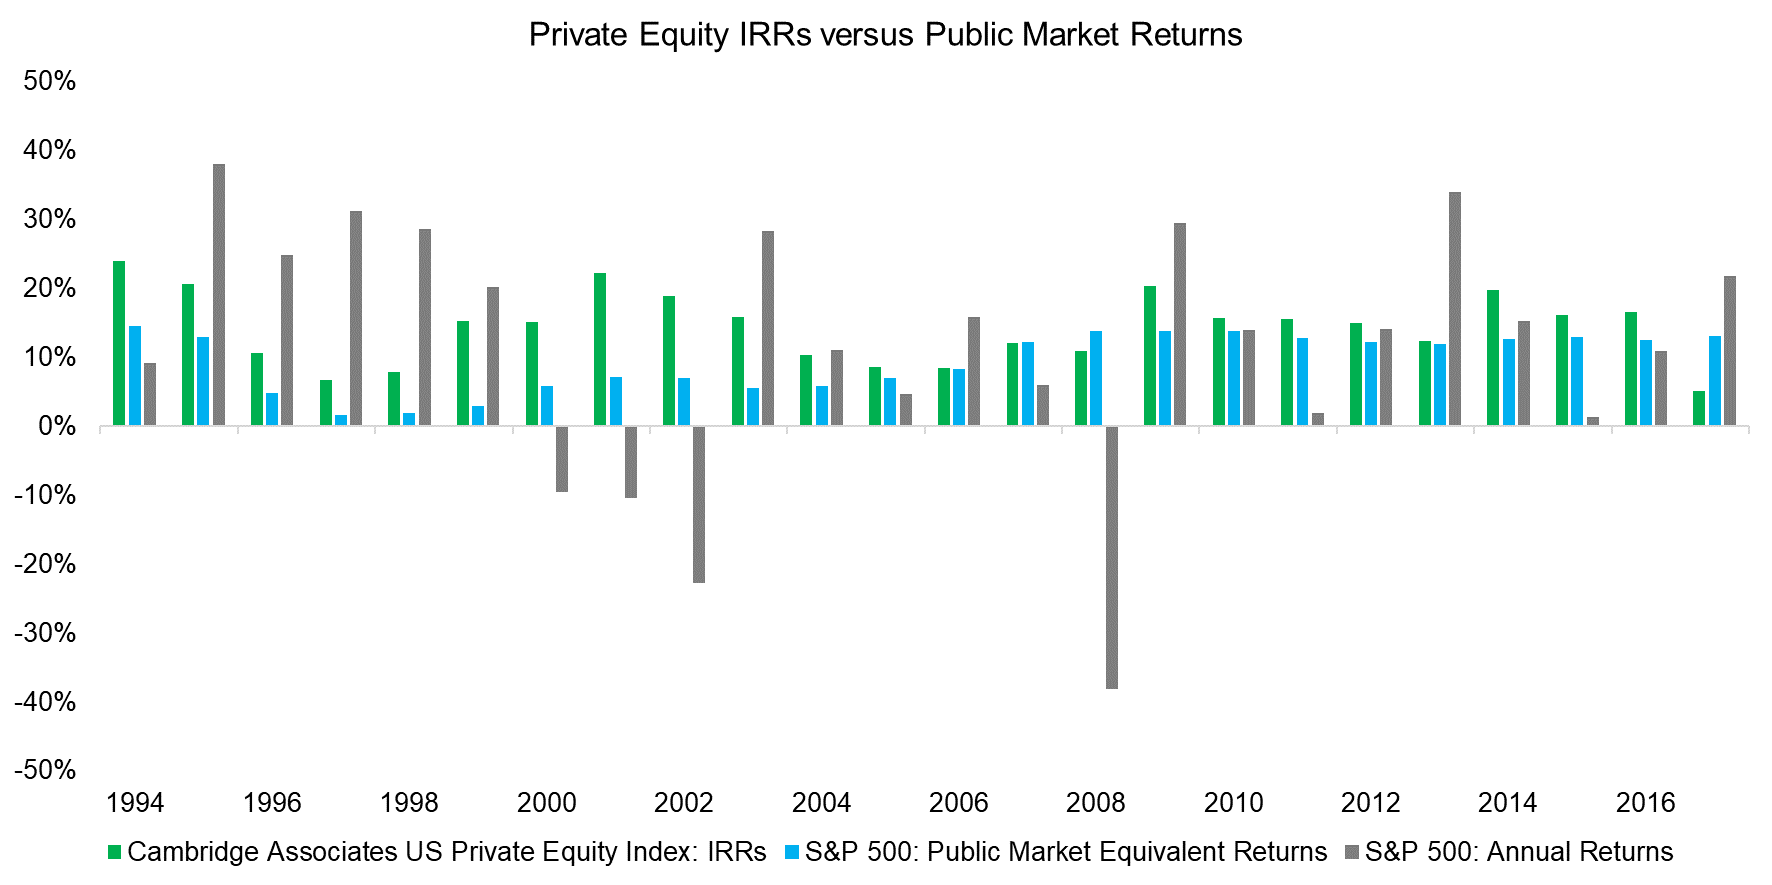 Private Equity IRRs versus Public Market Returns